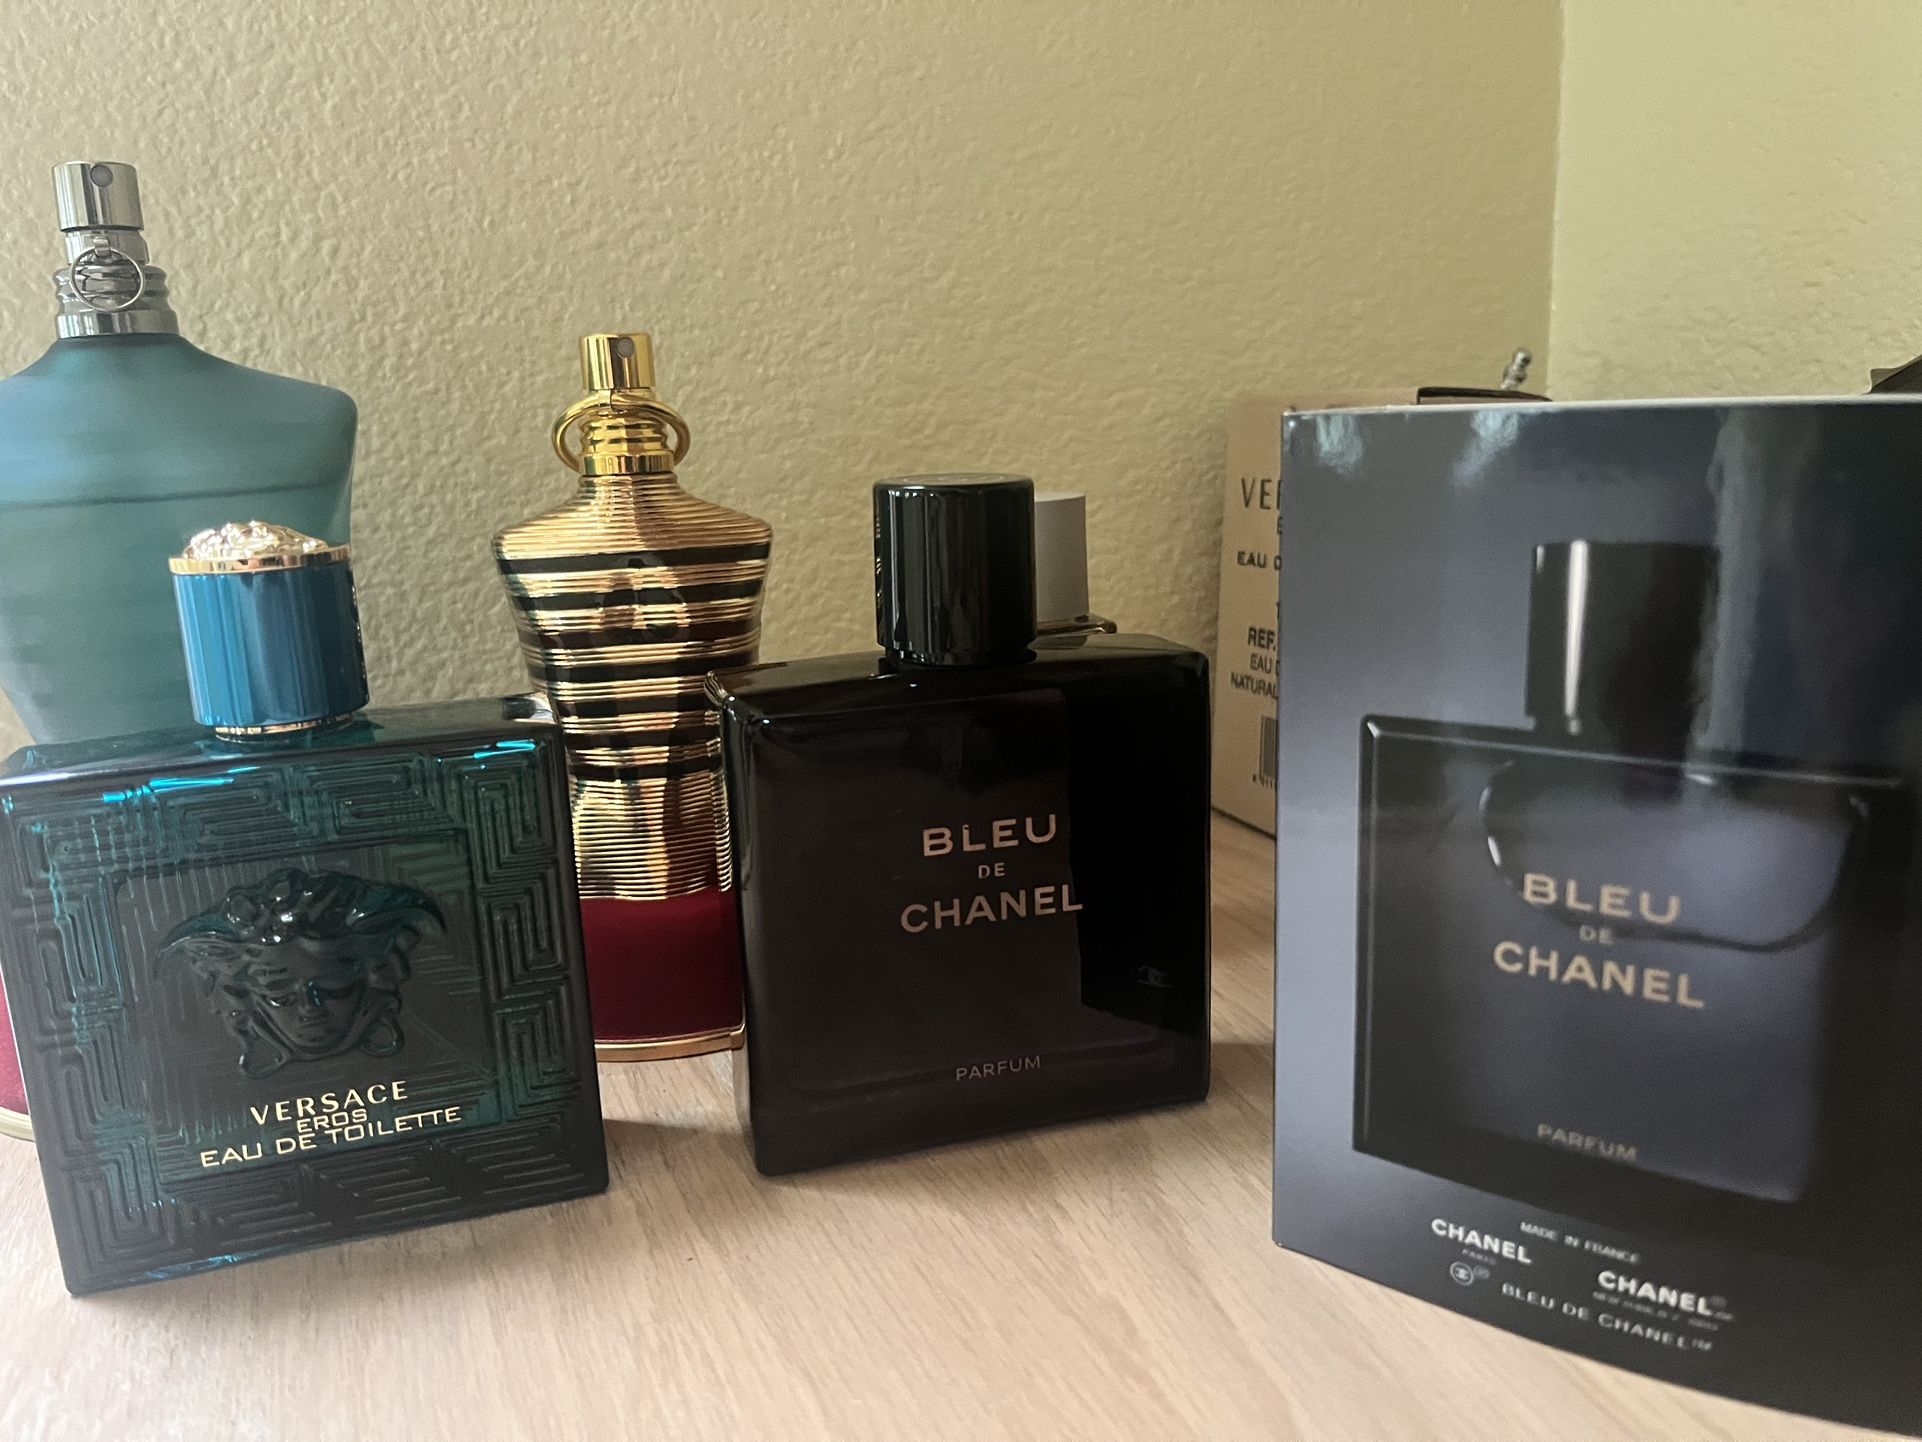 Bleu De Chanel Parfum - 3.4oz / 100ml - Price Dropped 